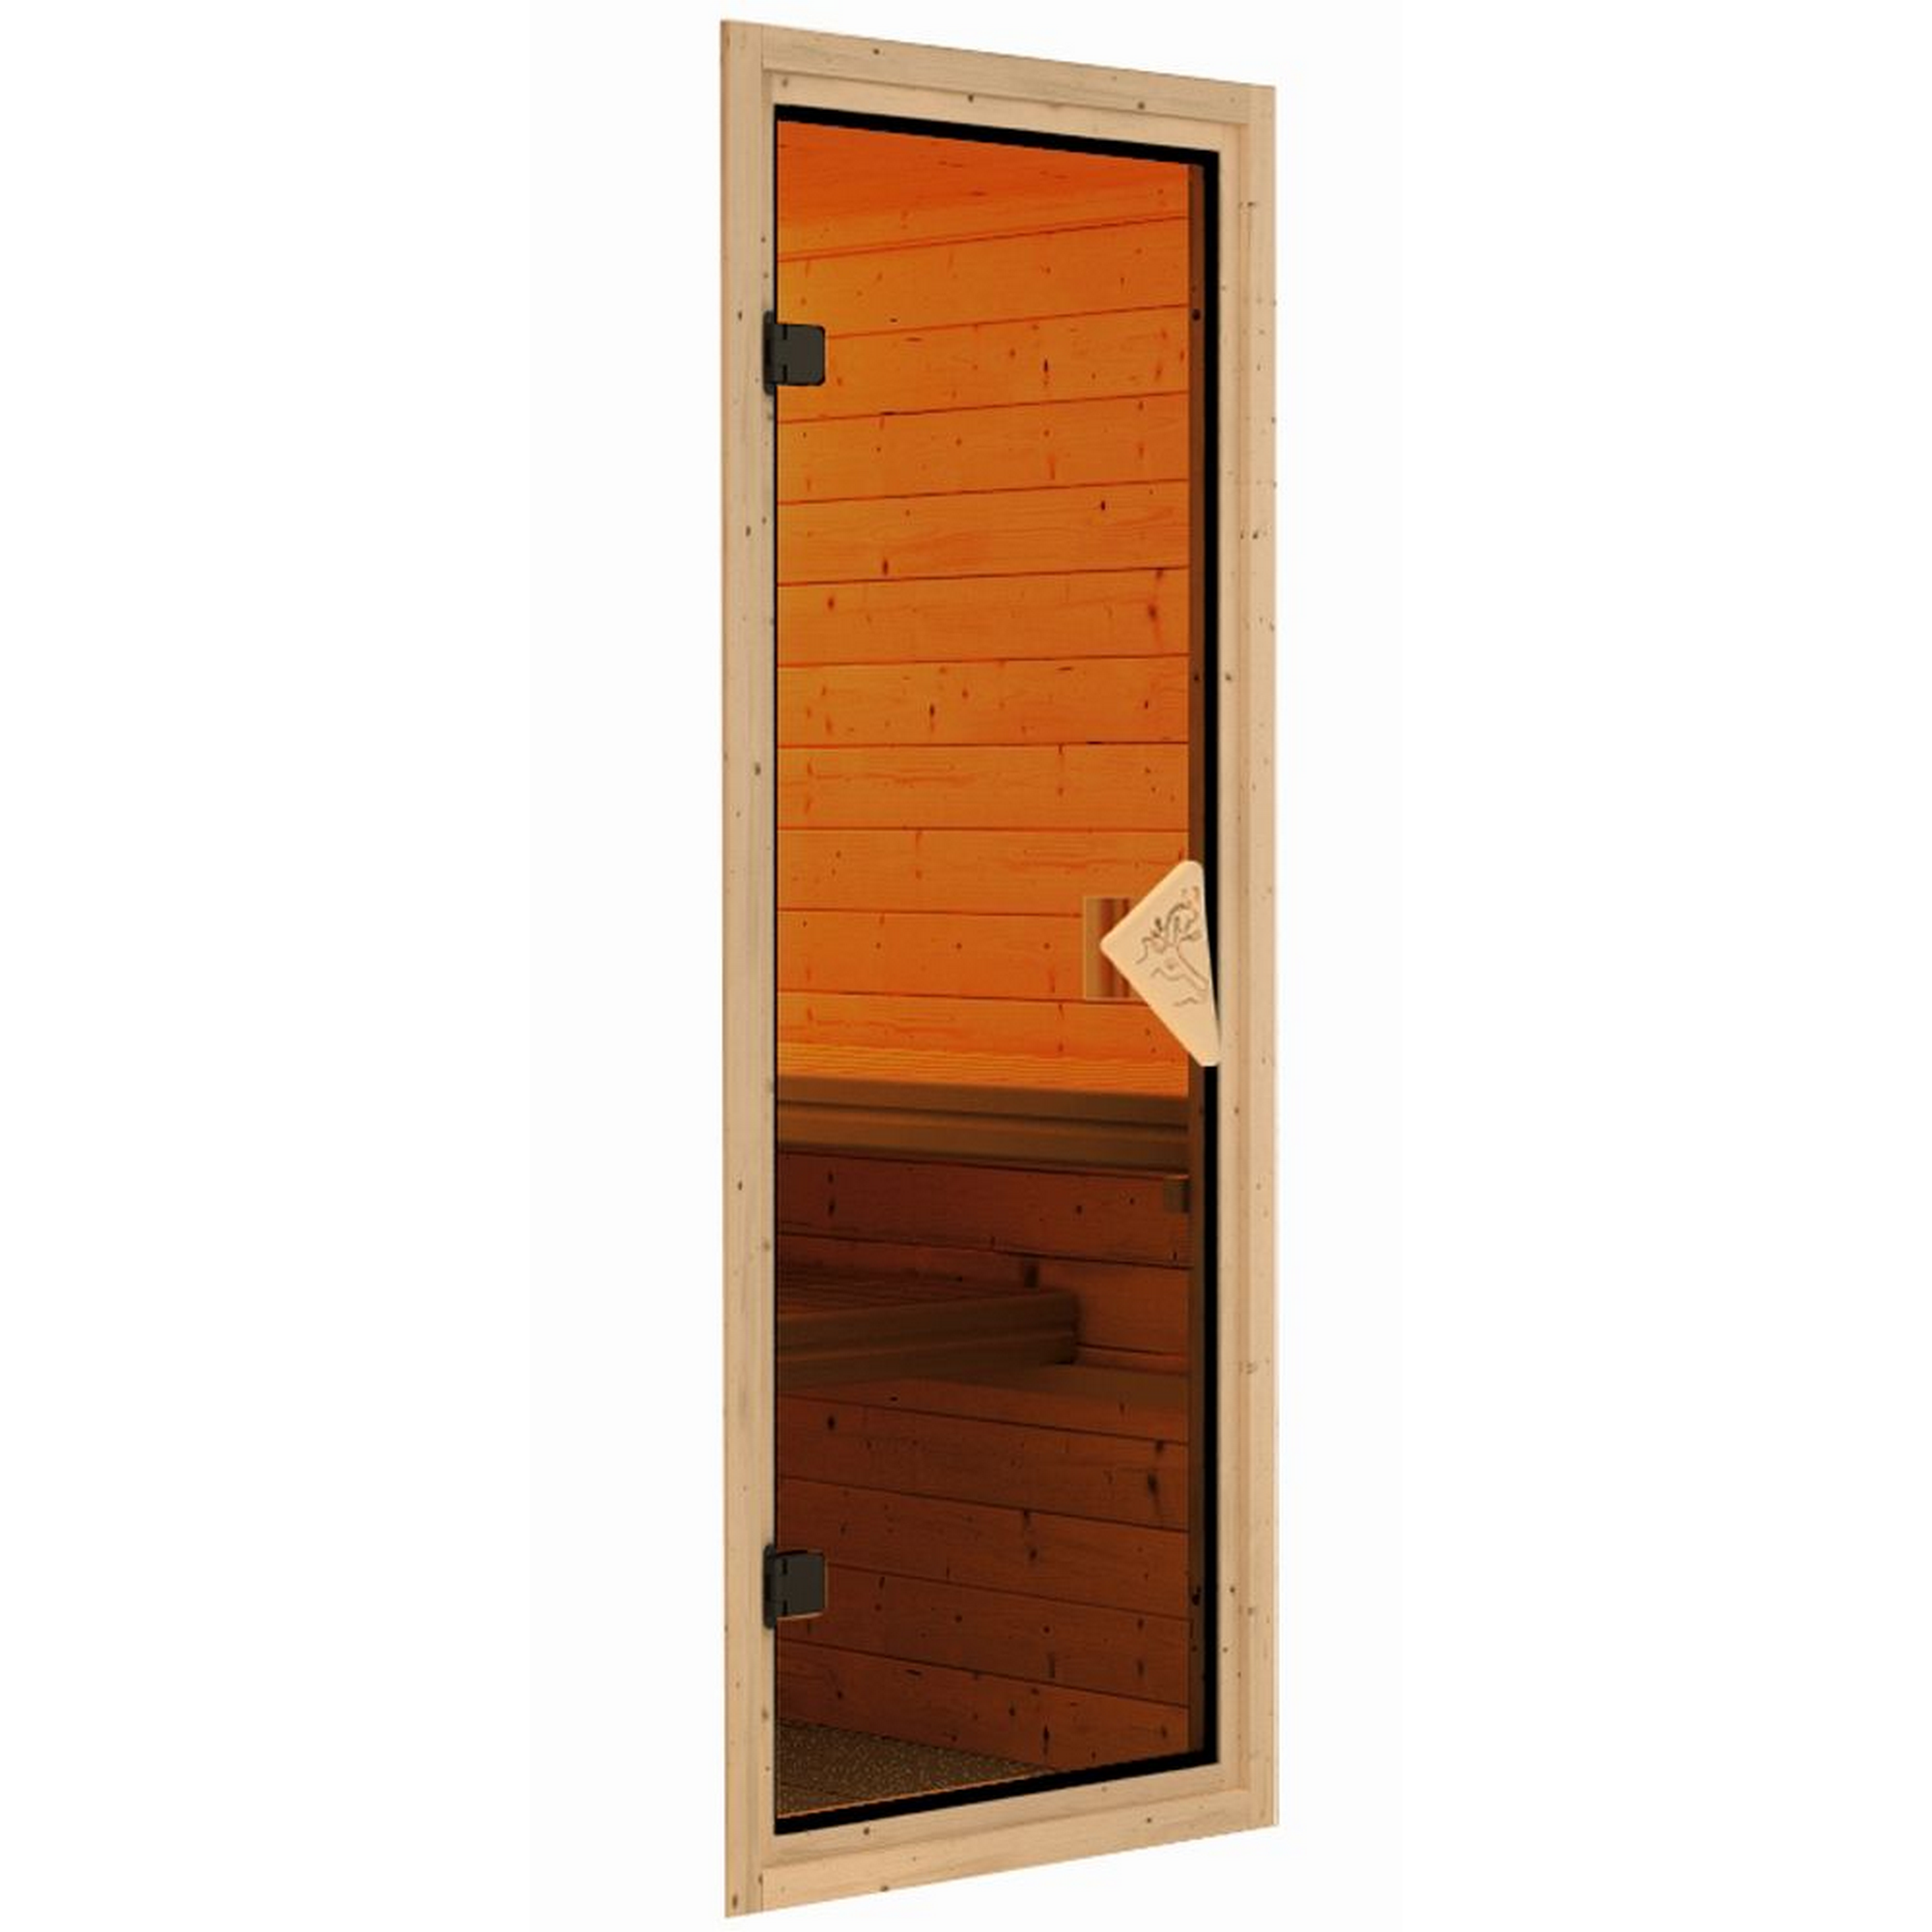 Elementsauna 'Emma' naturbelassen mit bronzierter Tür mit 3,6 kW Ofen externe Steuerung Easy 170 x 151 x 198 cm + product picture